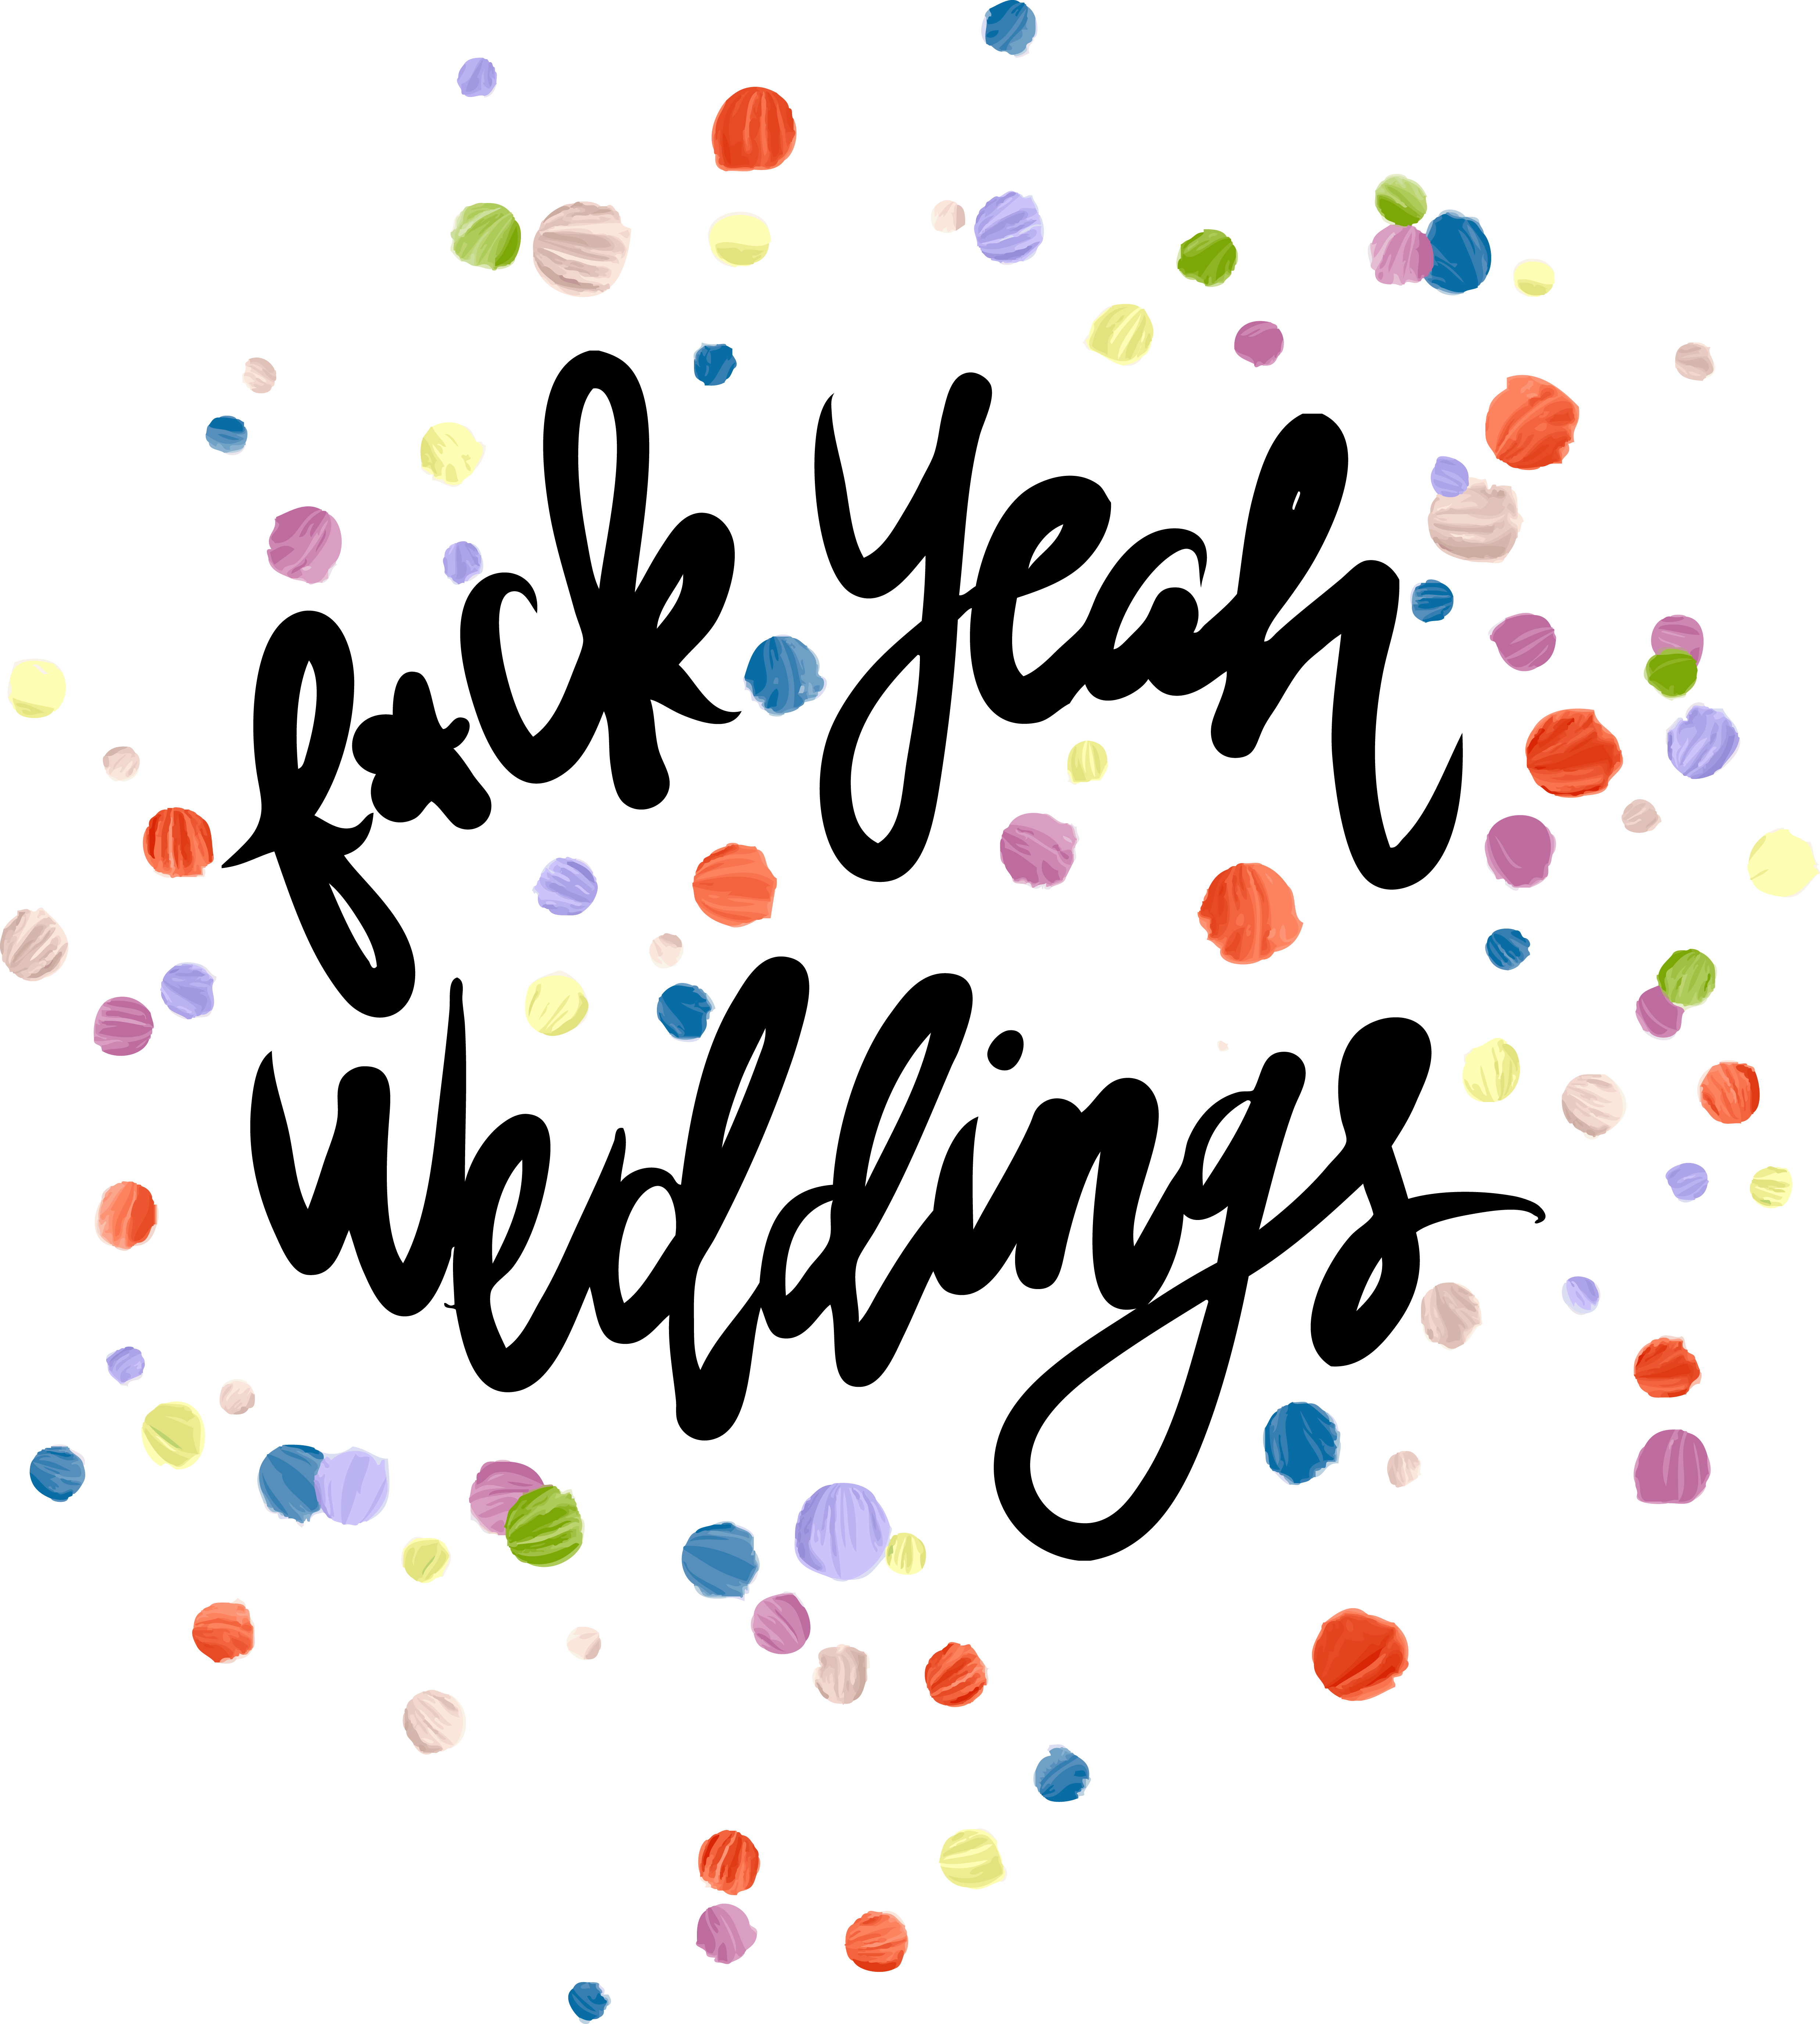 Fuck Yeah Weddings! logo